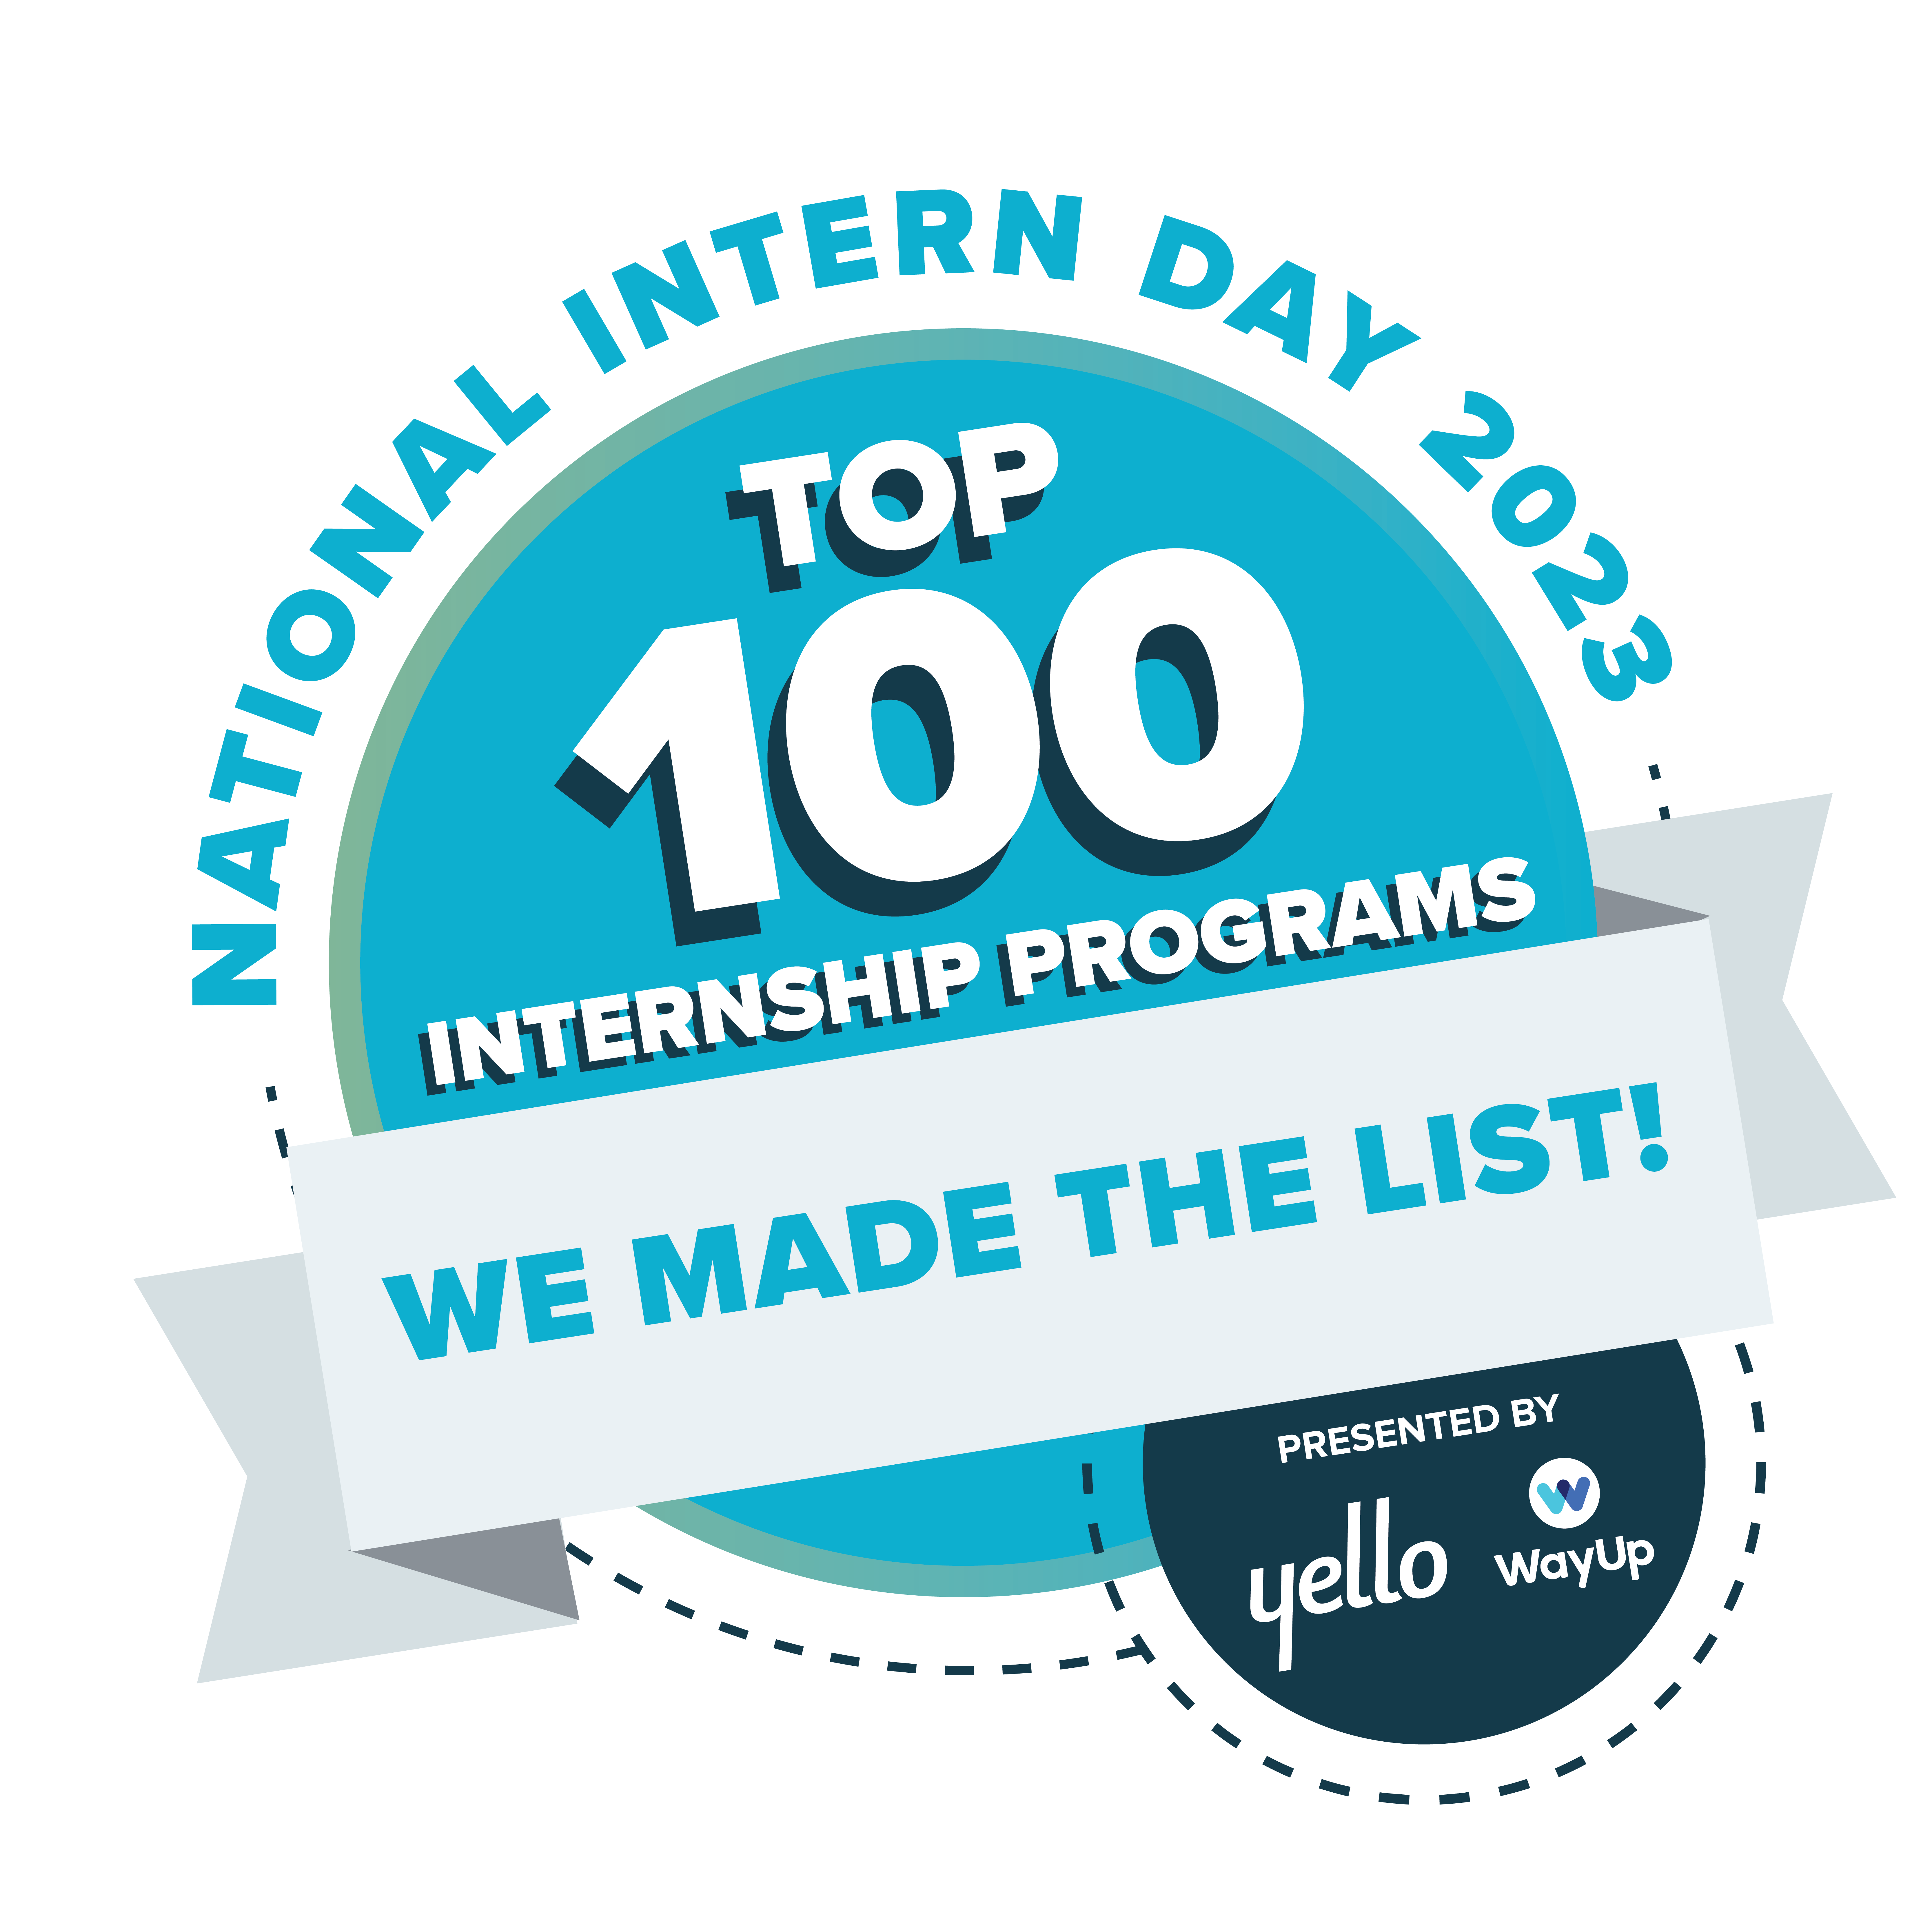 Top 100 Internship Program 2021